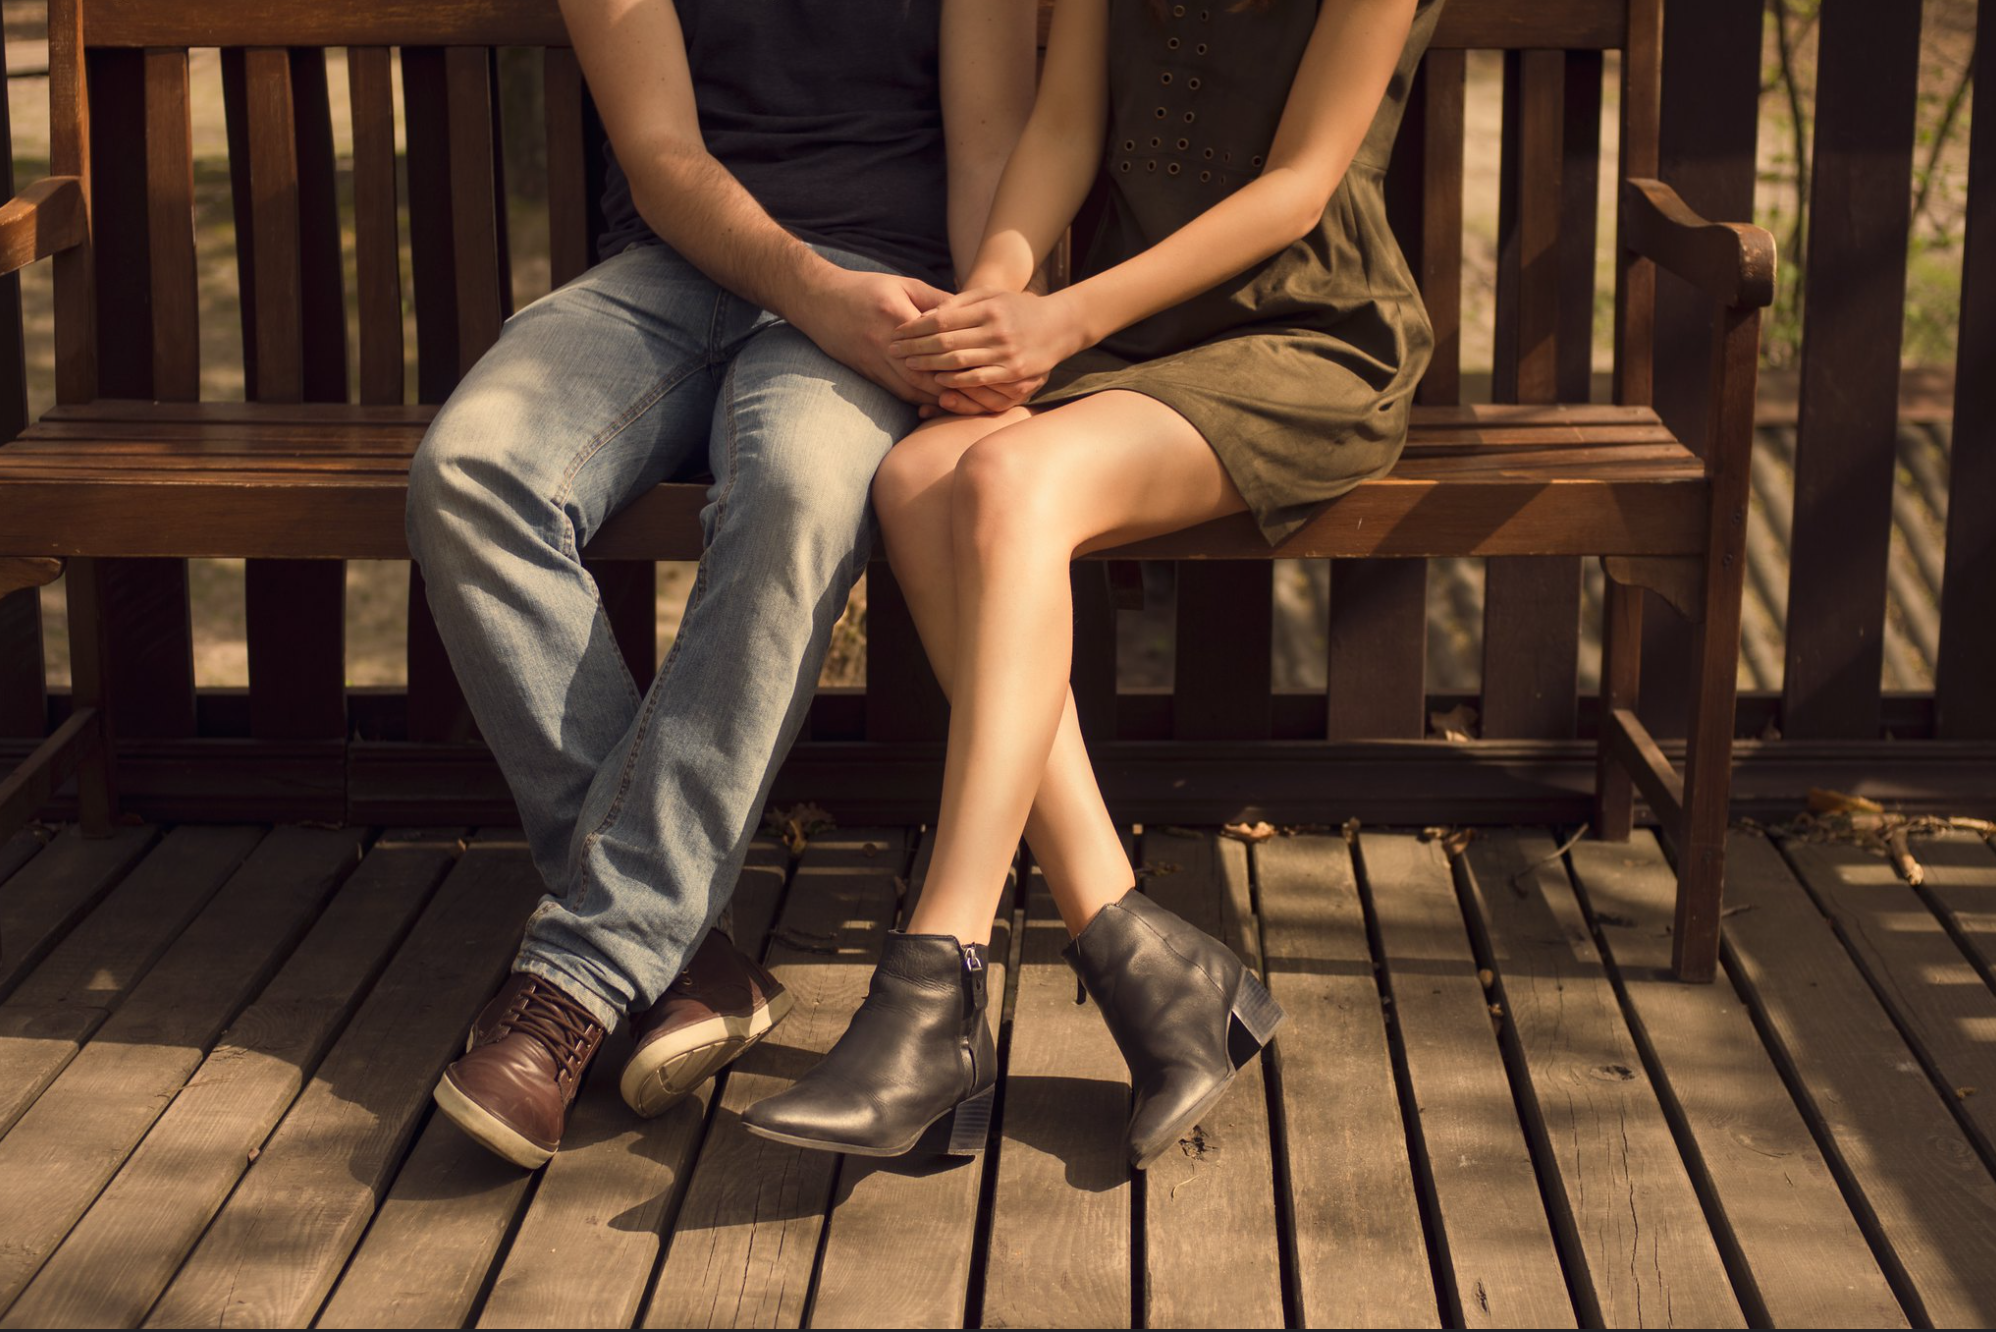 Joven pareja romántica sentada cerca en un banco al aire libre, tomados de la mano íntimamente; hombre vistiendo jeans, mujer una falda corta.